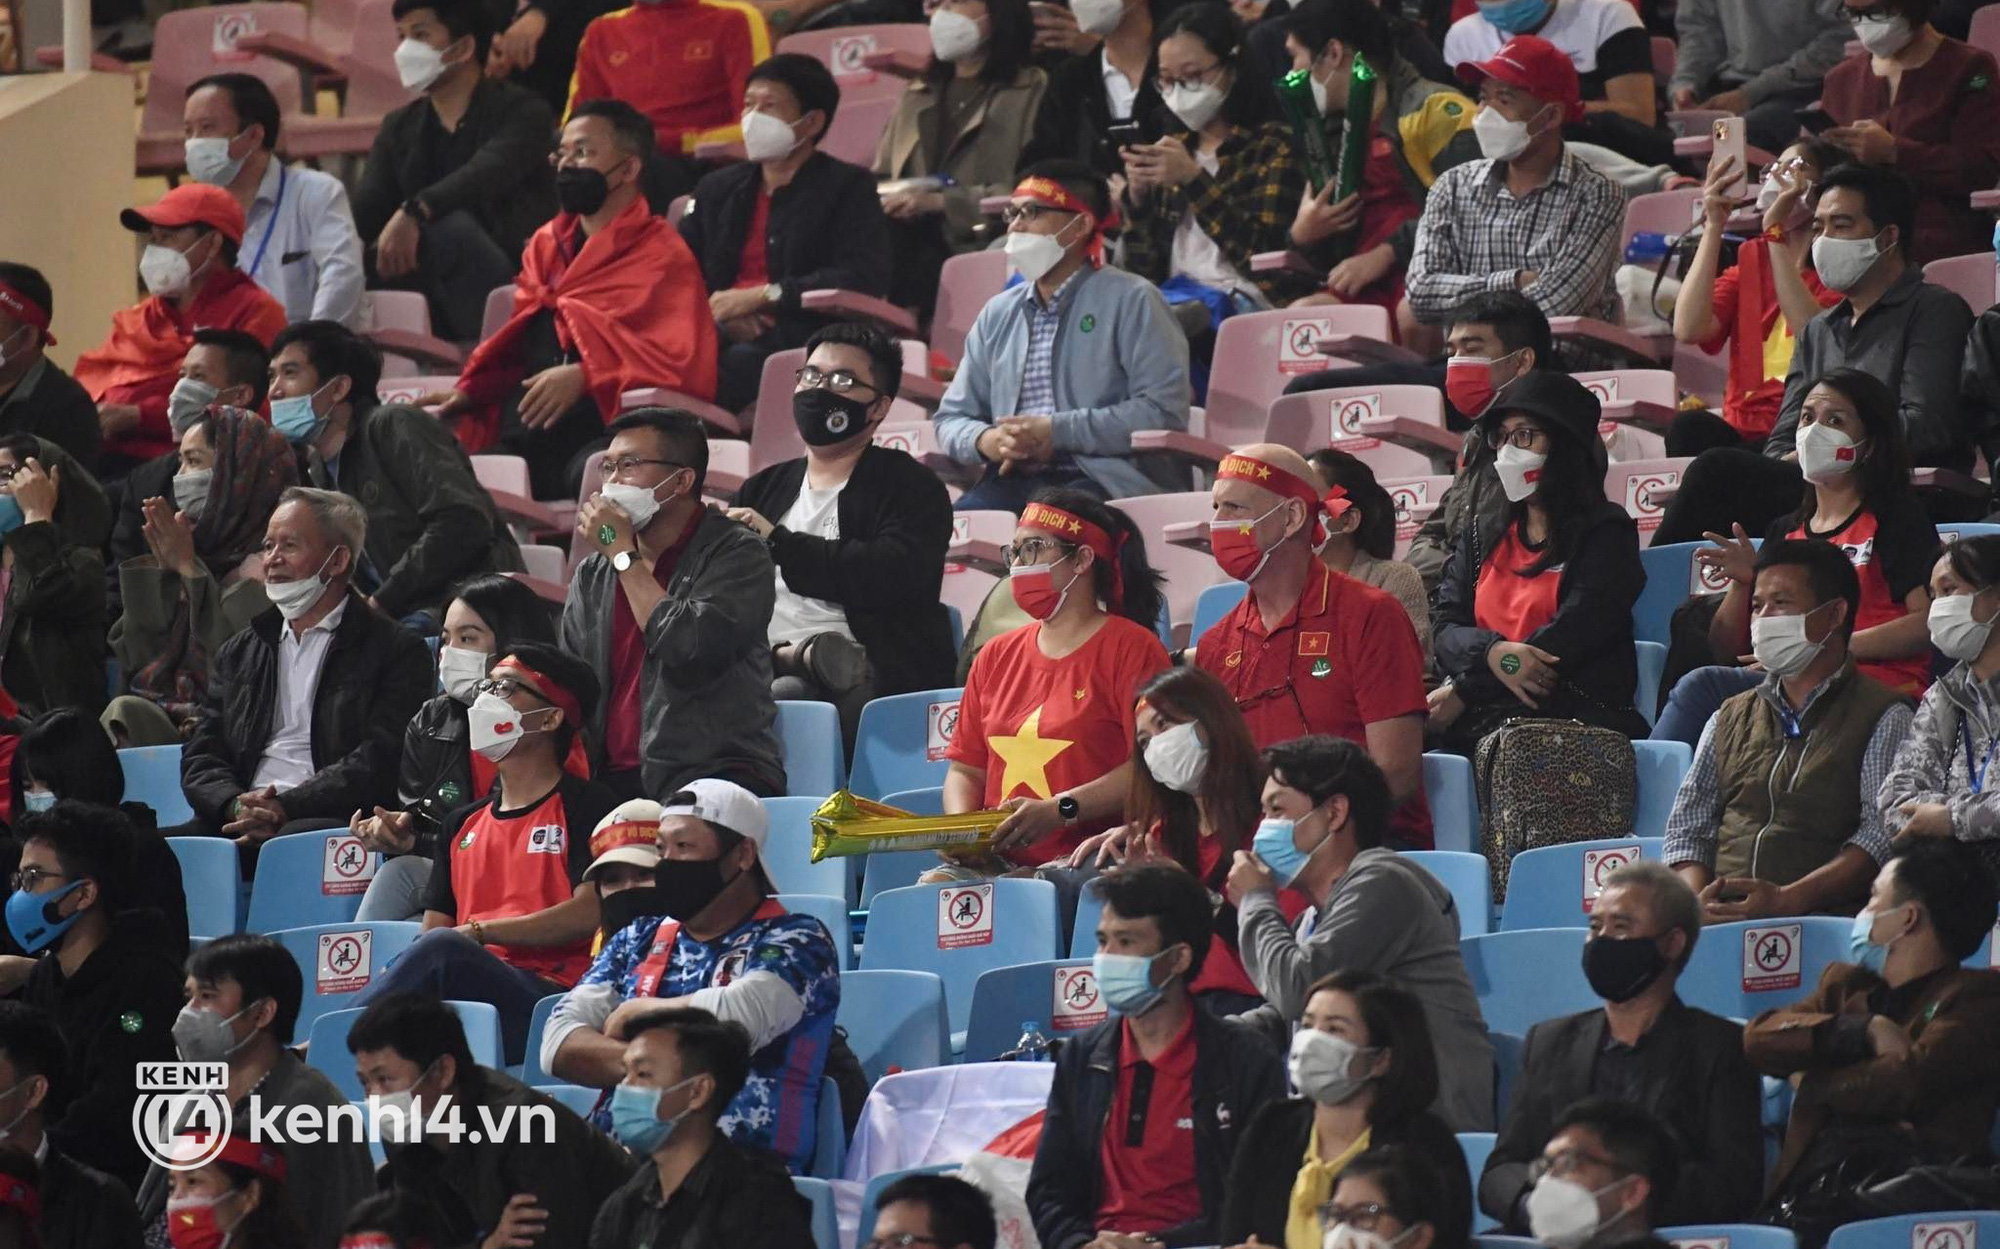 Muôn kiểu cổ vũ đội tuyển Việt Nam trong trận đấu với Nhật Bản: Hơn 10k người cháy hết mình tại SVĐ, nhiều người tụ tập ở quán, người lại ở nhà vừa xem vừa tránh dịch